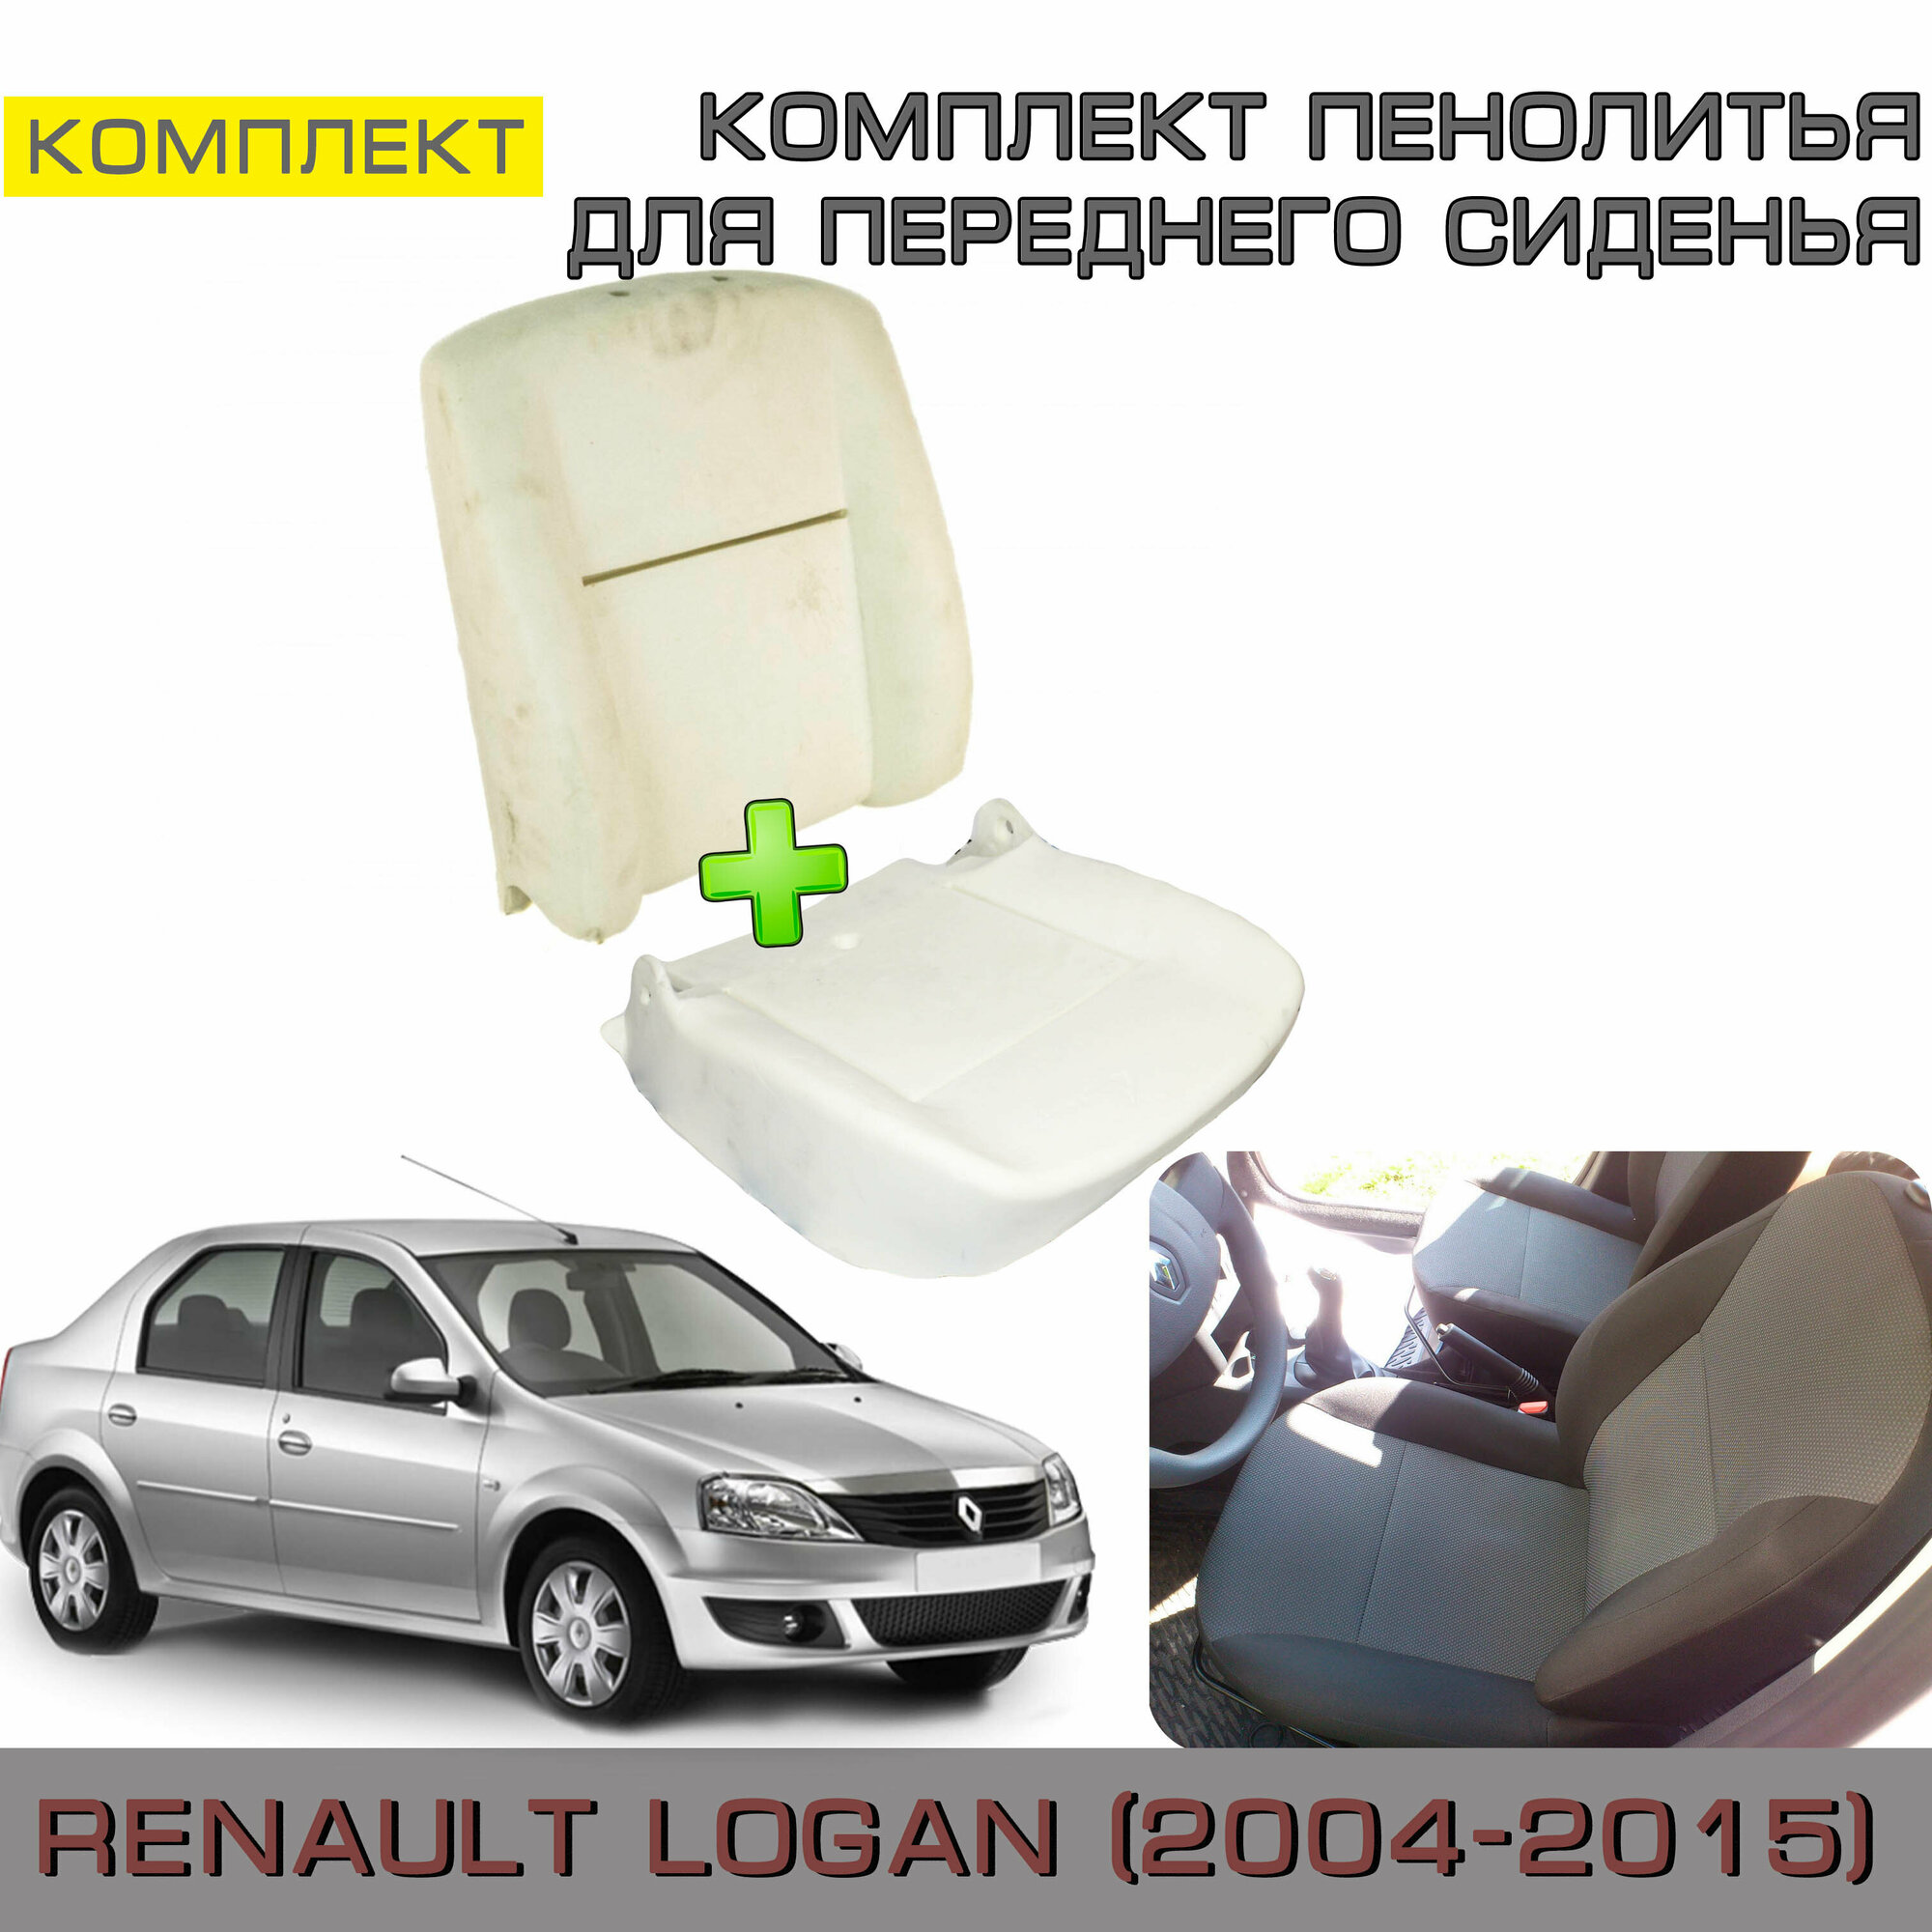 Комплект пенолитья на спинку и нижнее сидение Renault Logan 1 (Рено Логан 2004-2015 г. в.) В минимальной комплектации